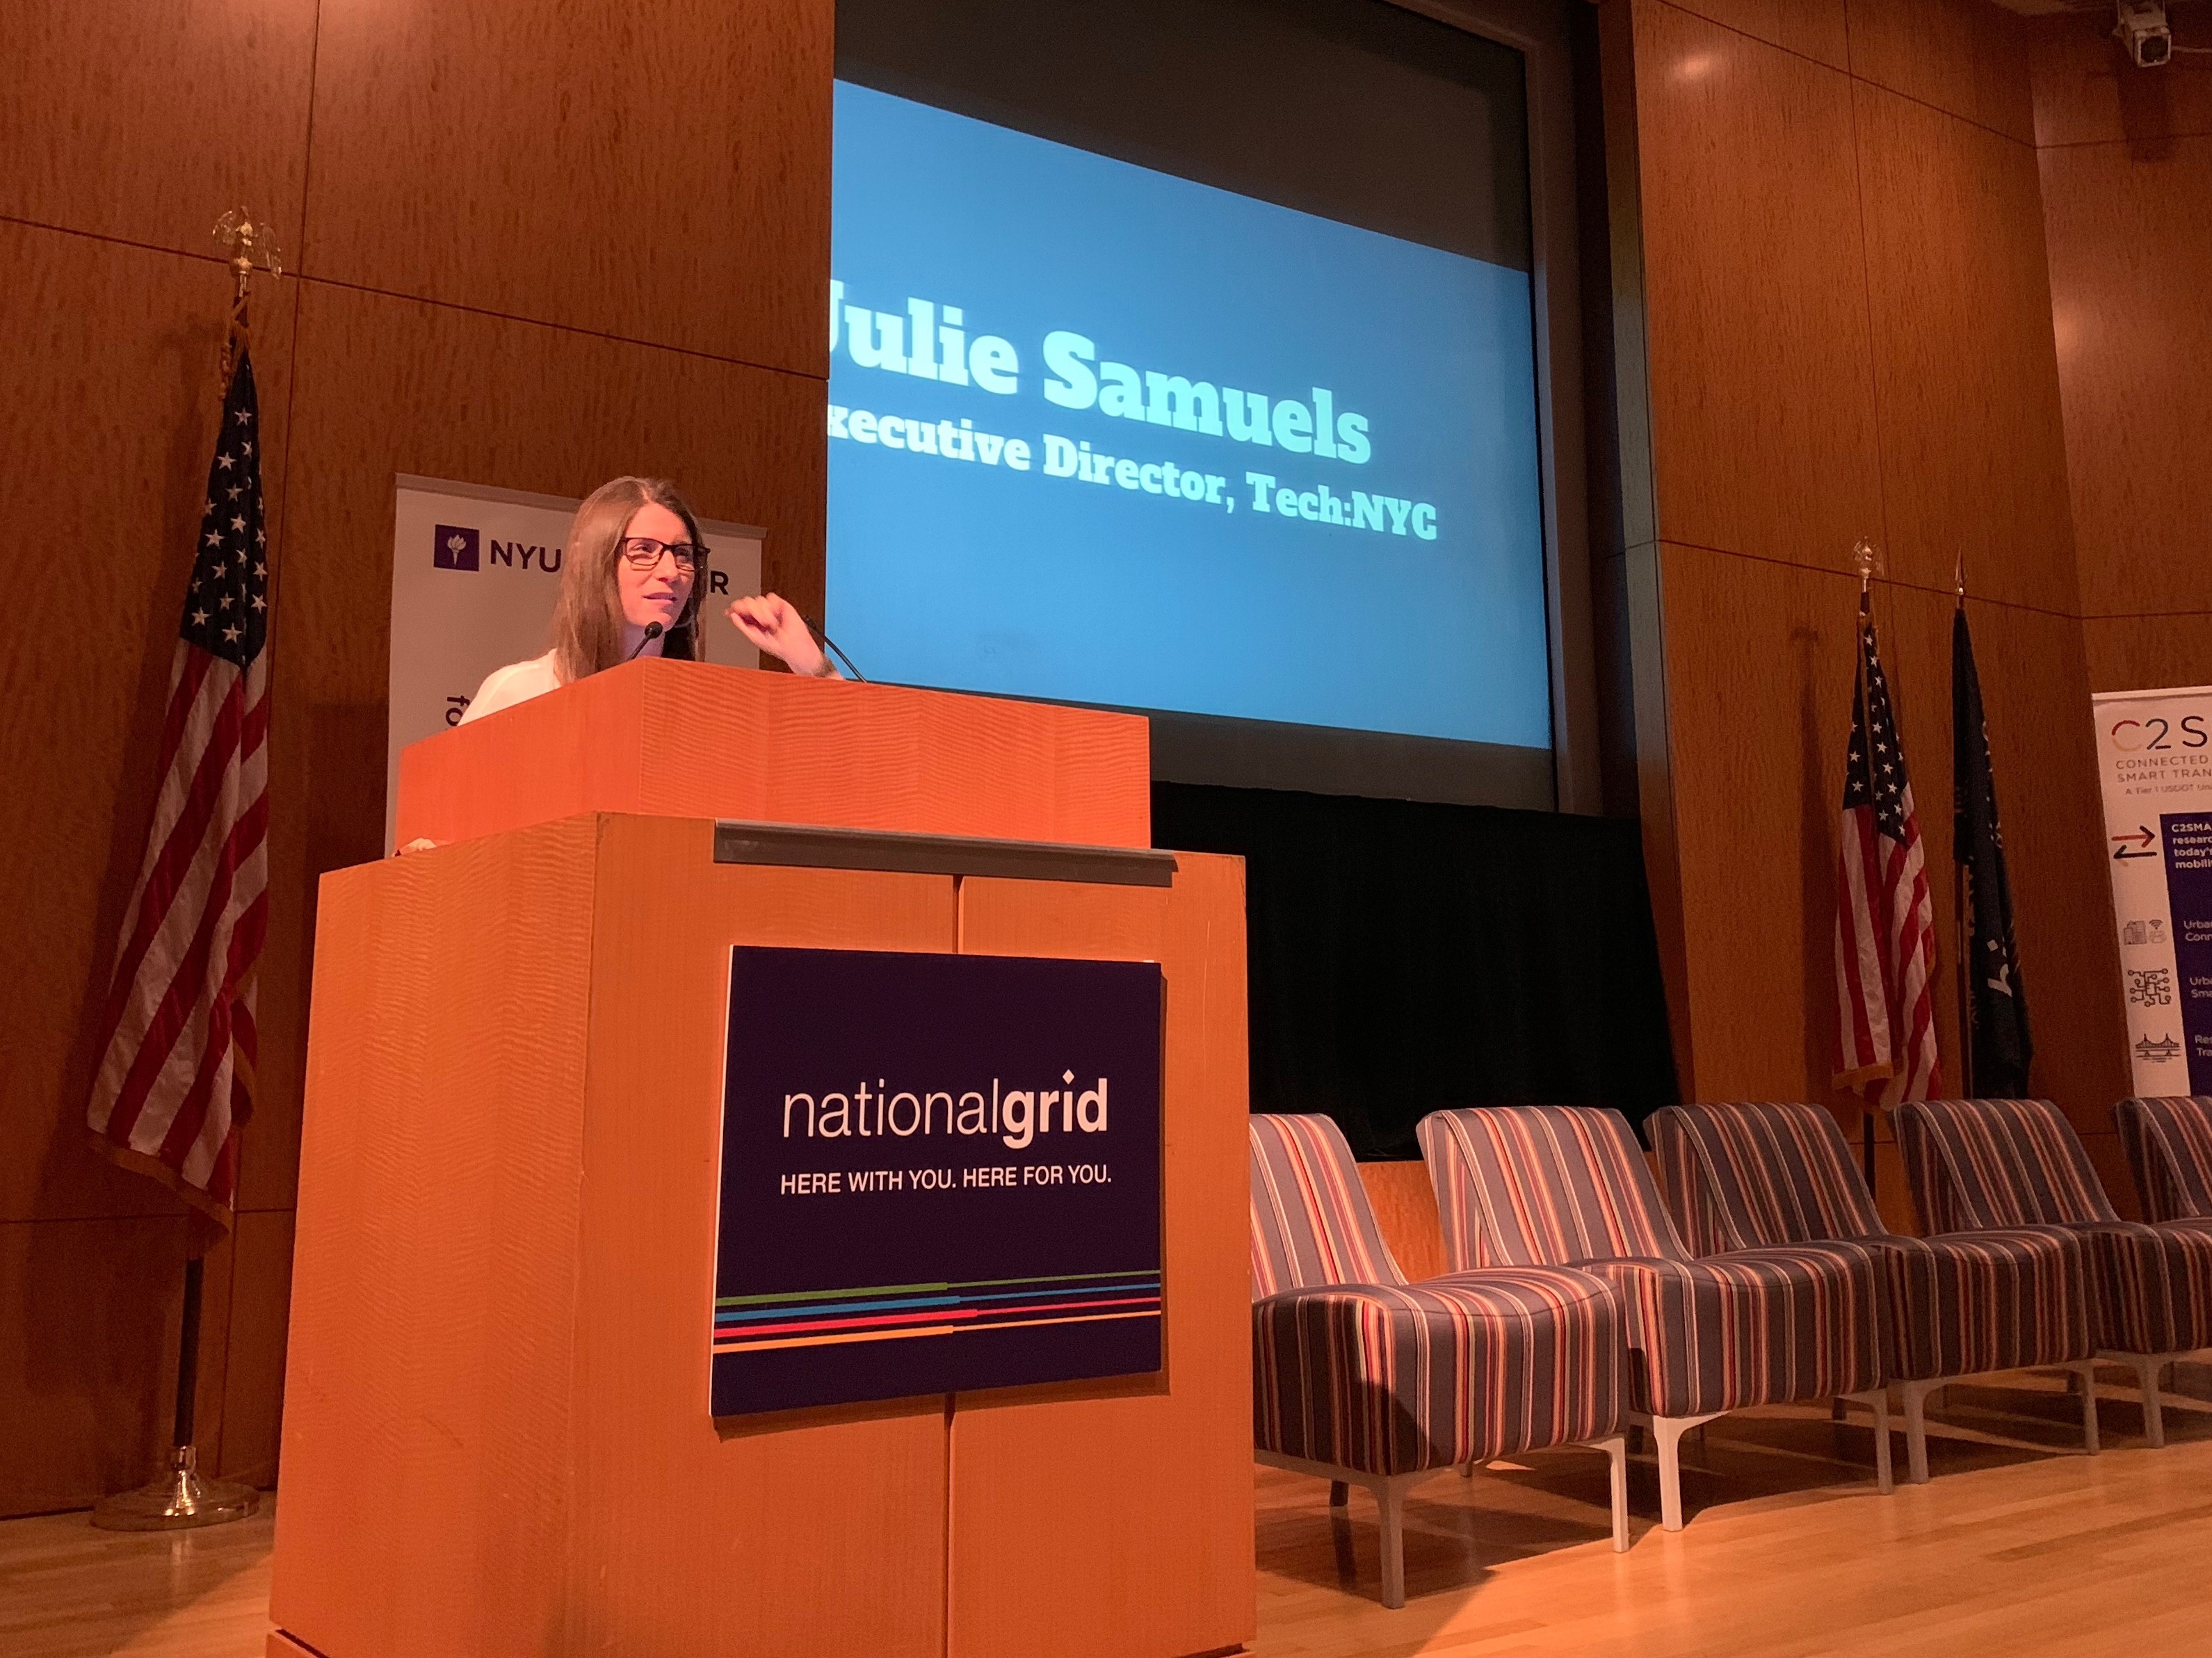 Julie Samuels delivered opening remarks